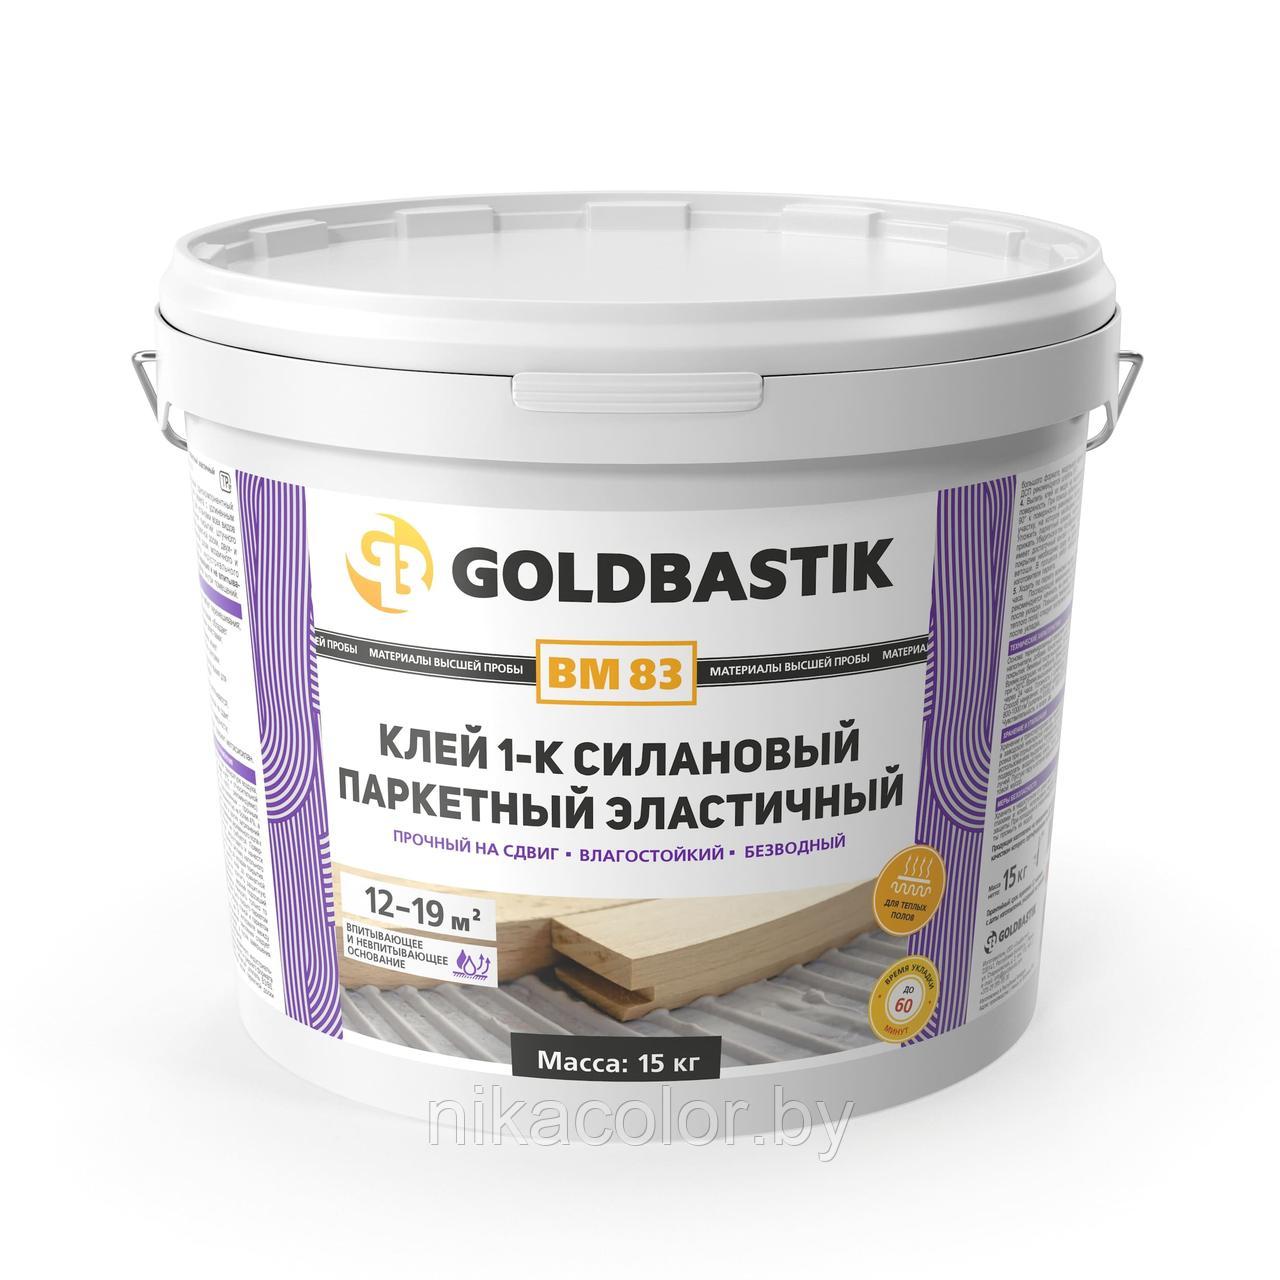 Клей Goldbastik 1-к силановый паркетный эластичный 15кг